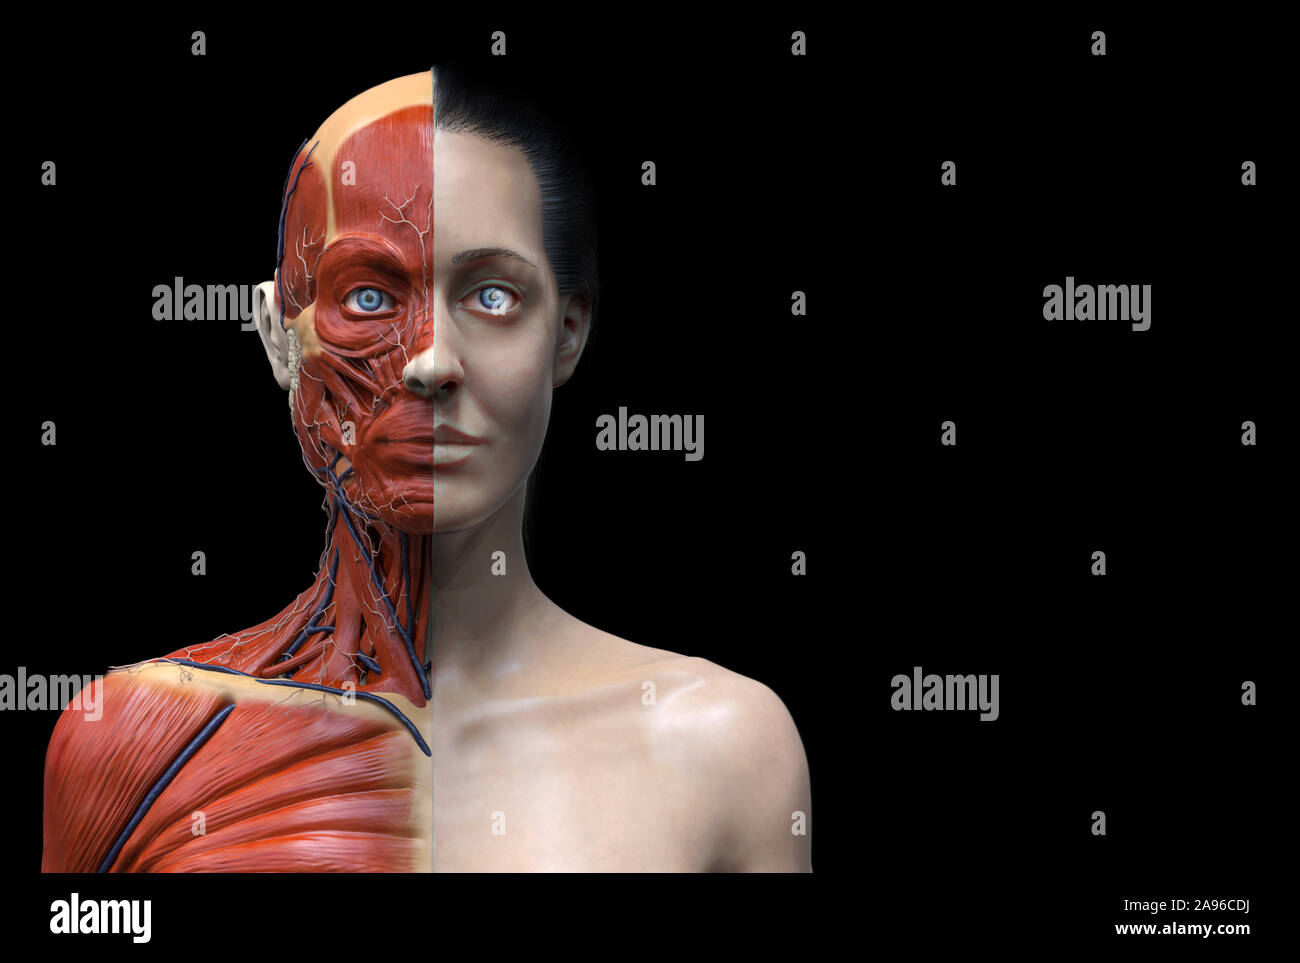 Les muscles de l'anatomie du corps humain structure d'une femme, vue de face Vue de côté et vue en perspective, 3D render Banque D'Images